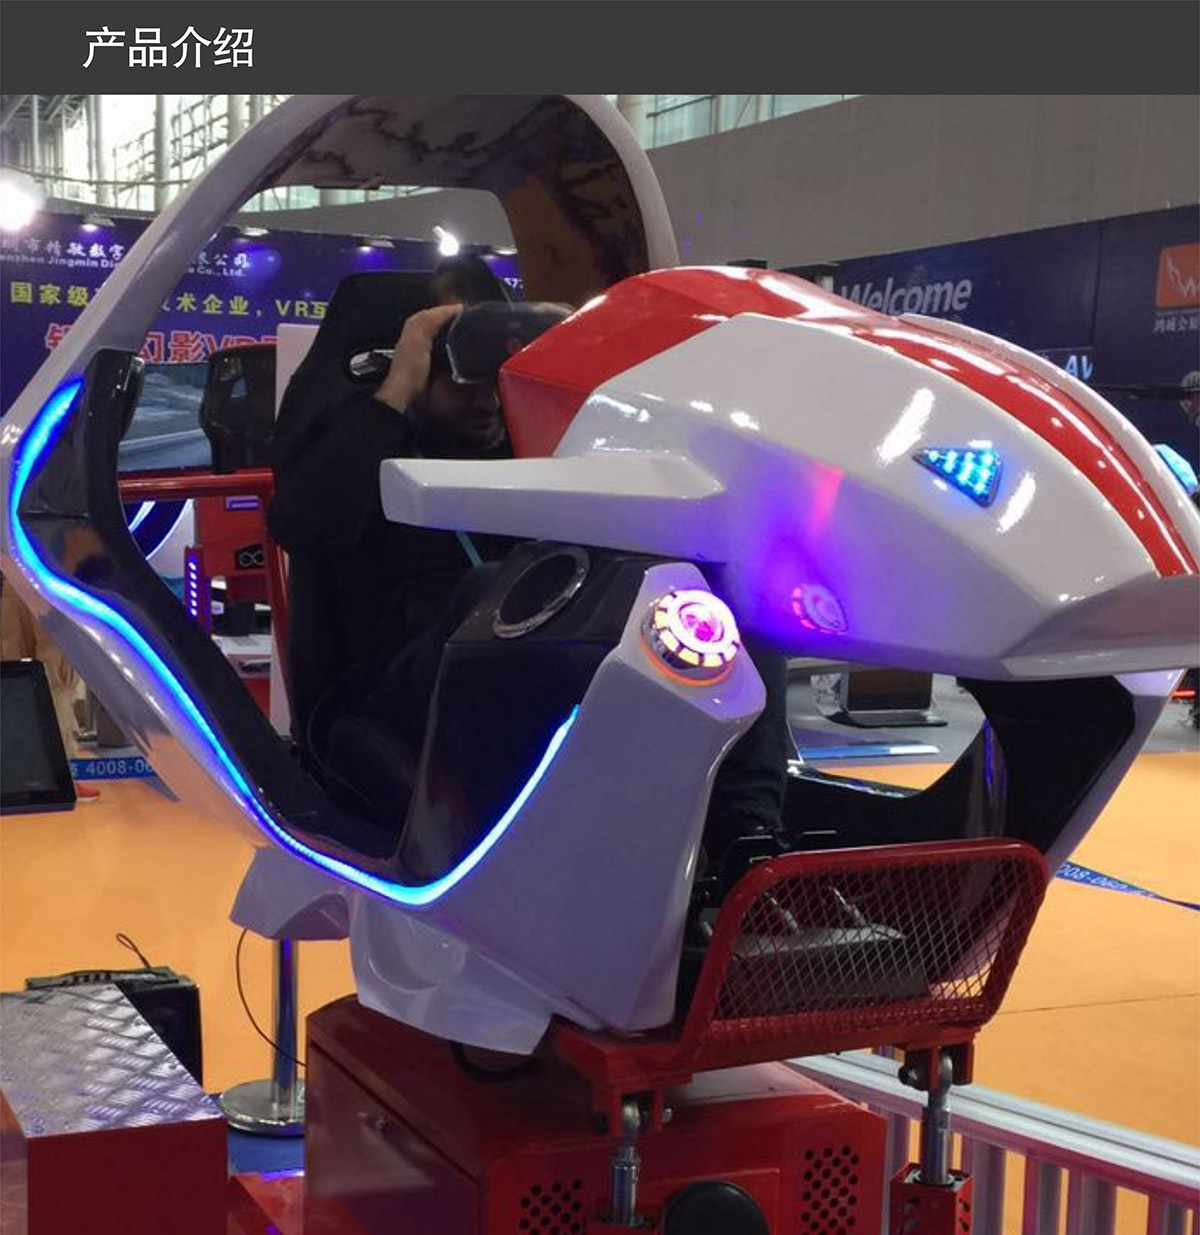 模拟安全VR飞行赛车产品介绍.jpg